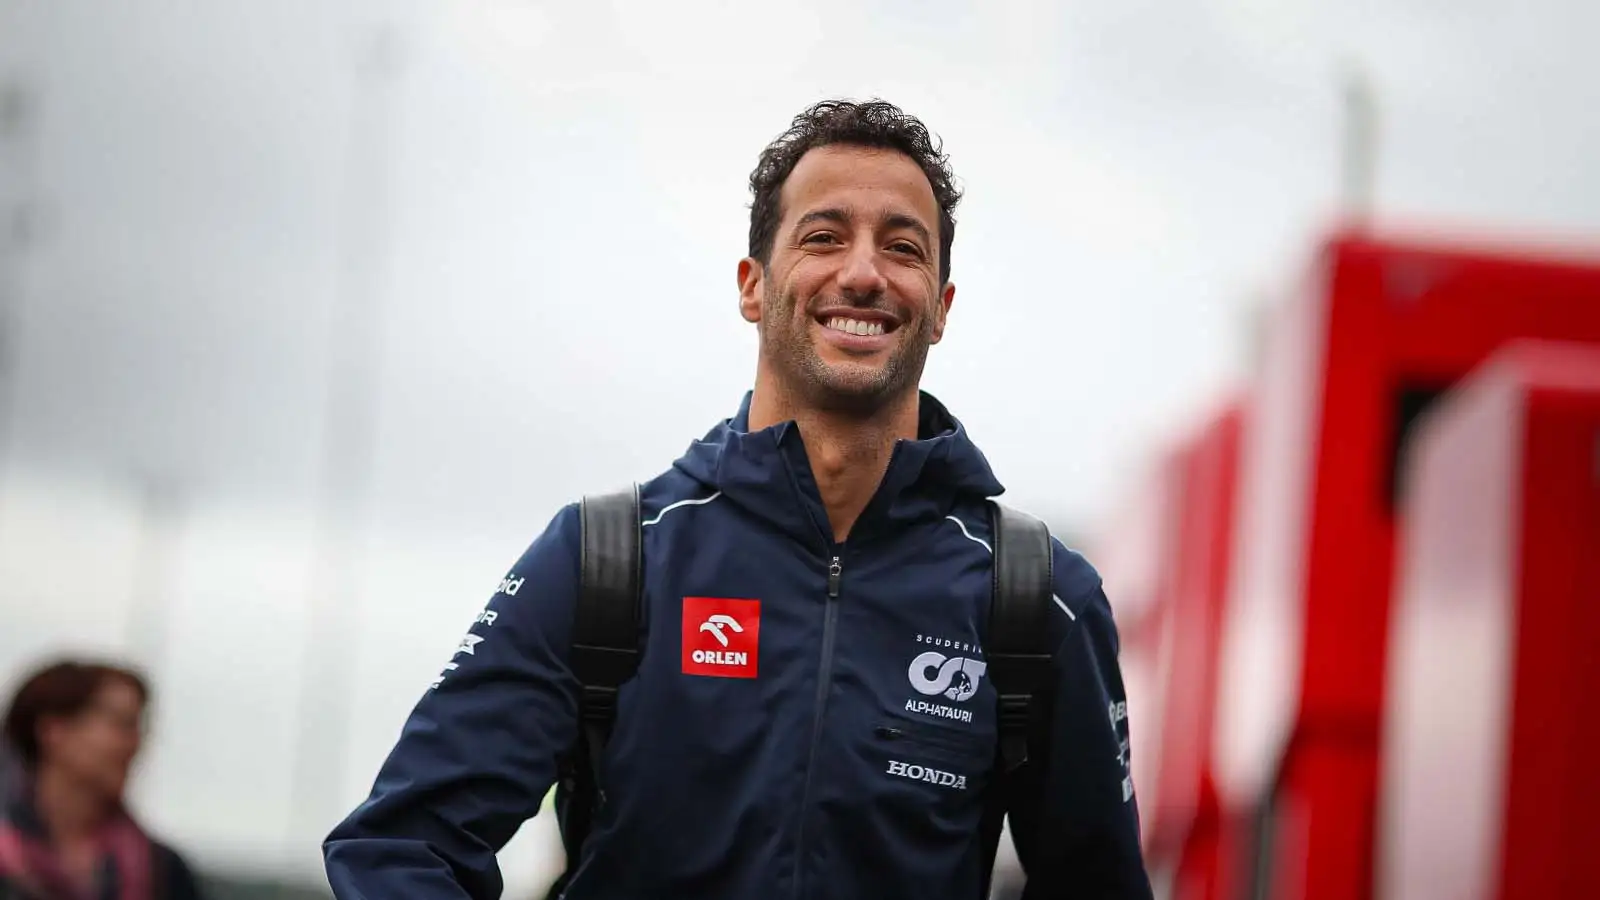 丹尼尔Ricciardoin the paddock at Spa.